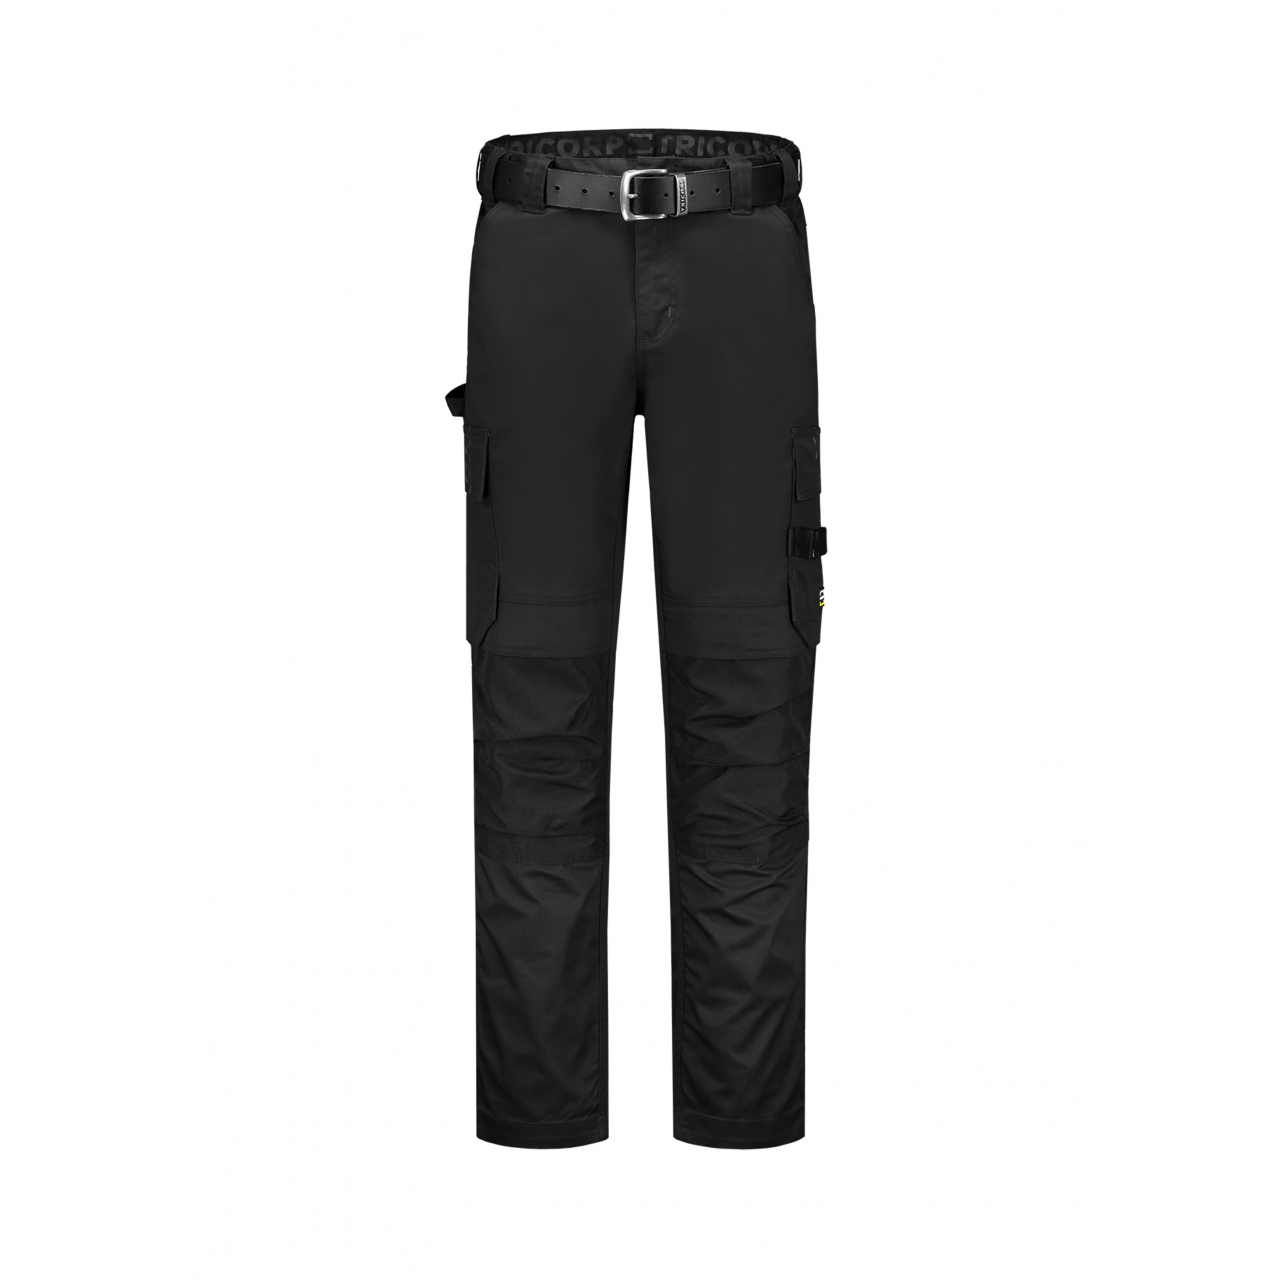 Pracovní kalhoty unisex Tricorp Work Pants Twill Cordura - černé, 46